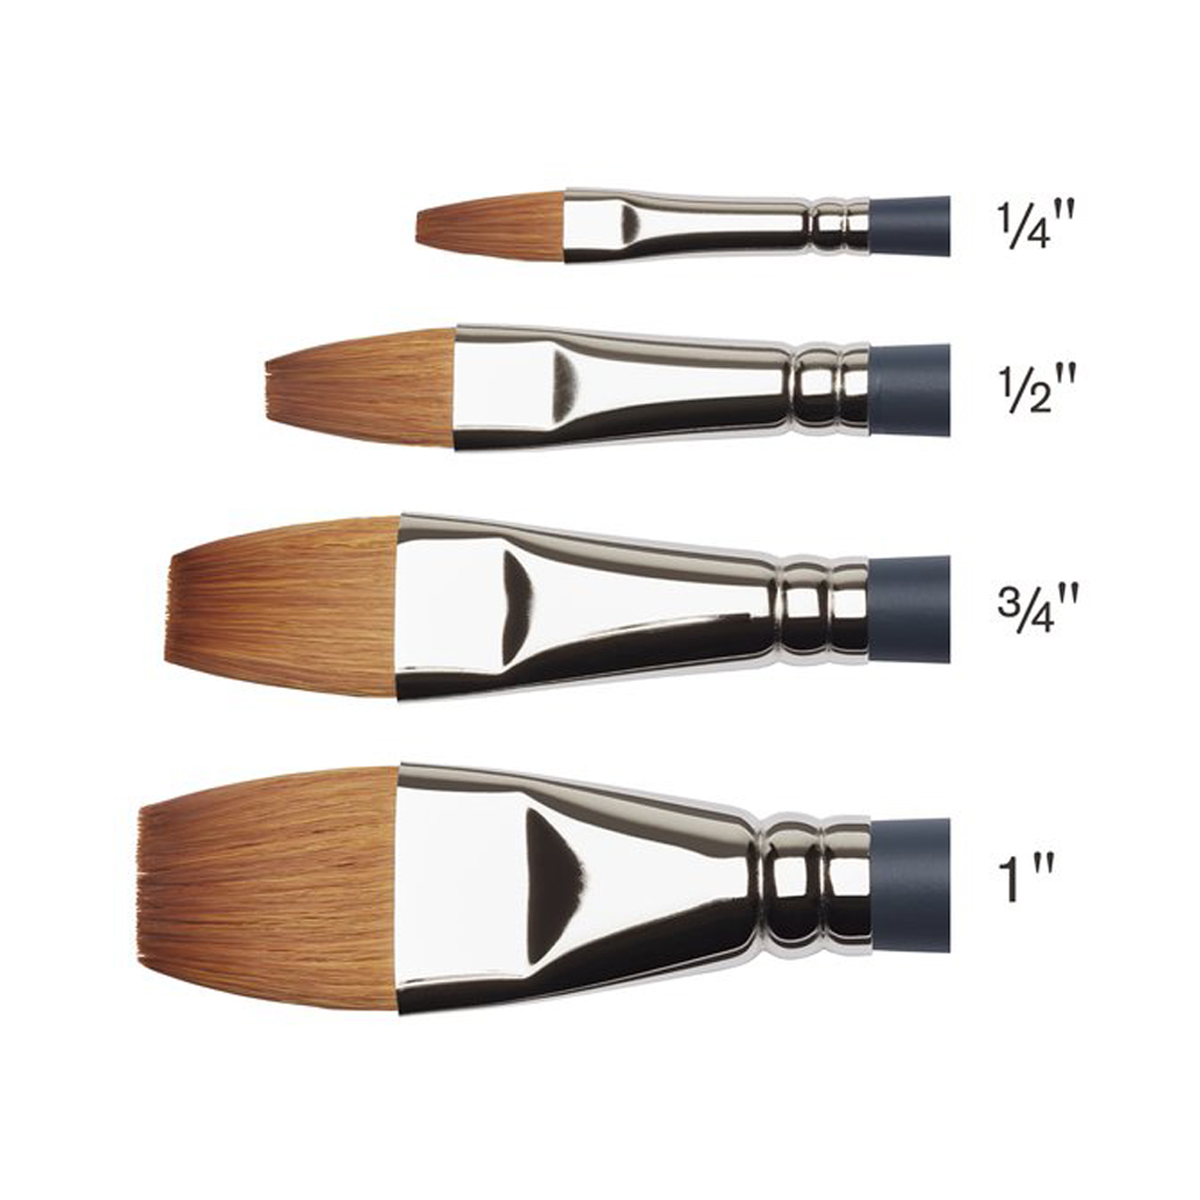 Professional Brush One Stroke St 1/4 i gruppen Kunstnerartikler / Pensler / Akvarelpensler hos Pen Store (125820)